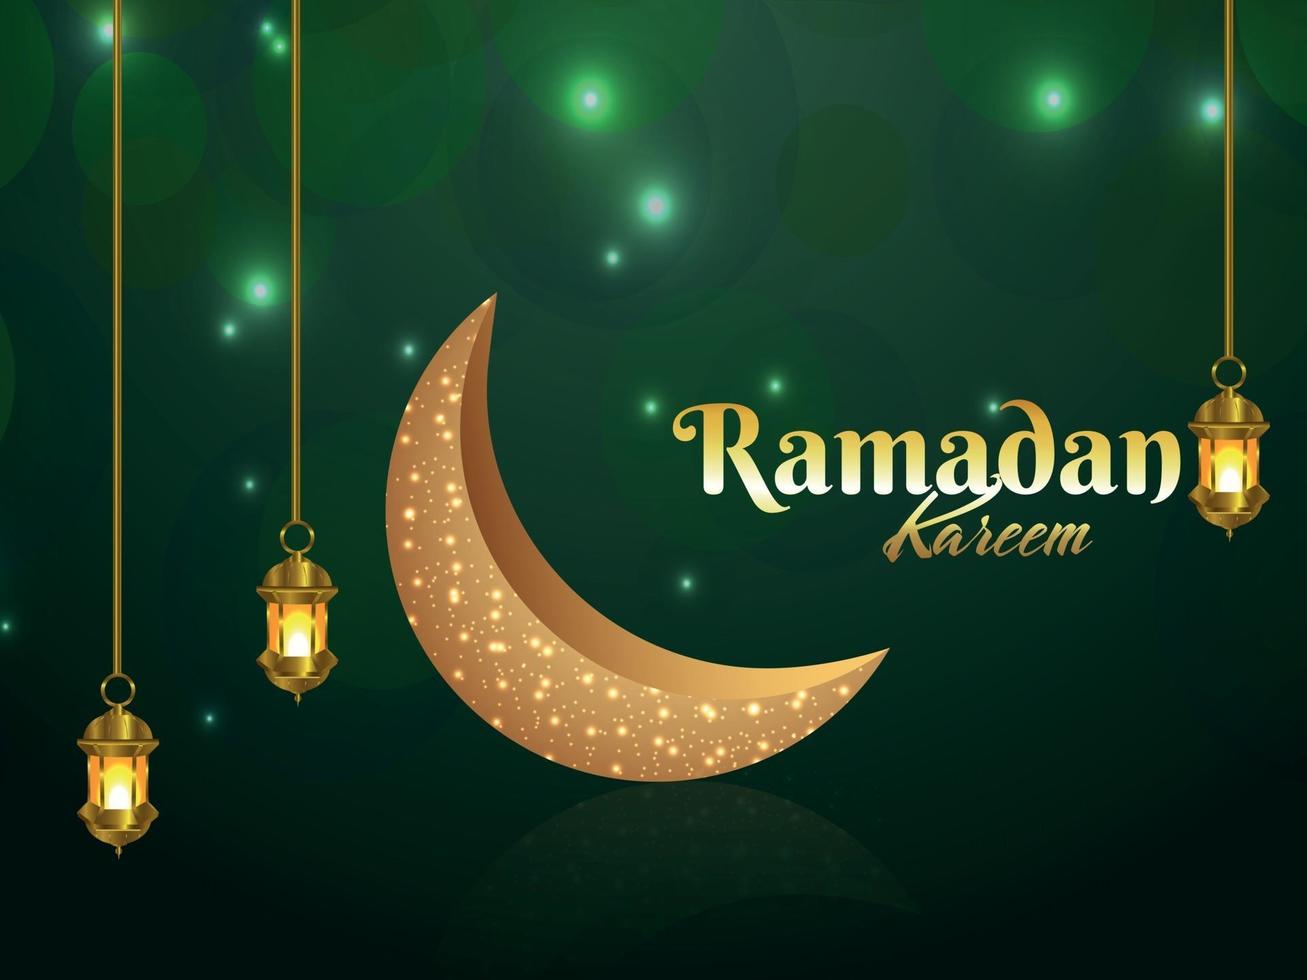 sfondo di invito ramadan kareem con luna e lanterna dorate vettore